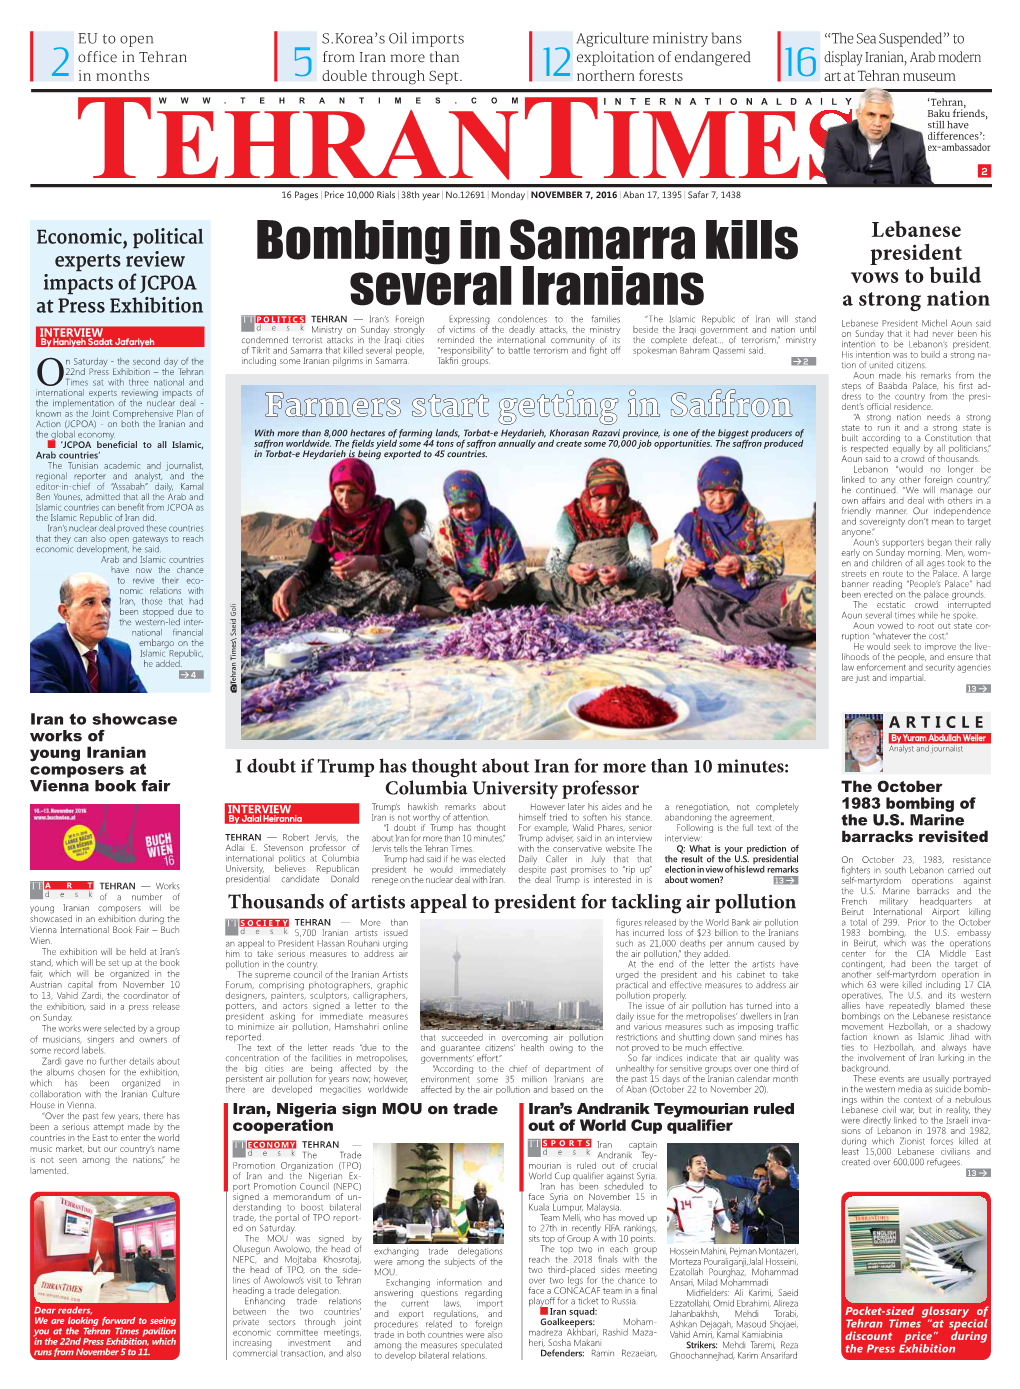 Bombing in Samarra Kills Several Iranians